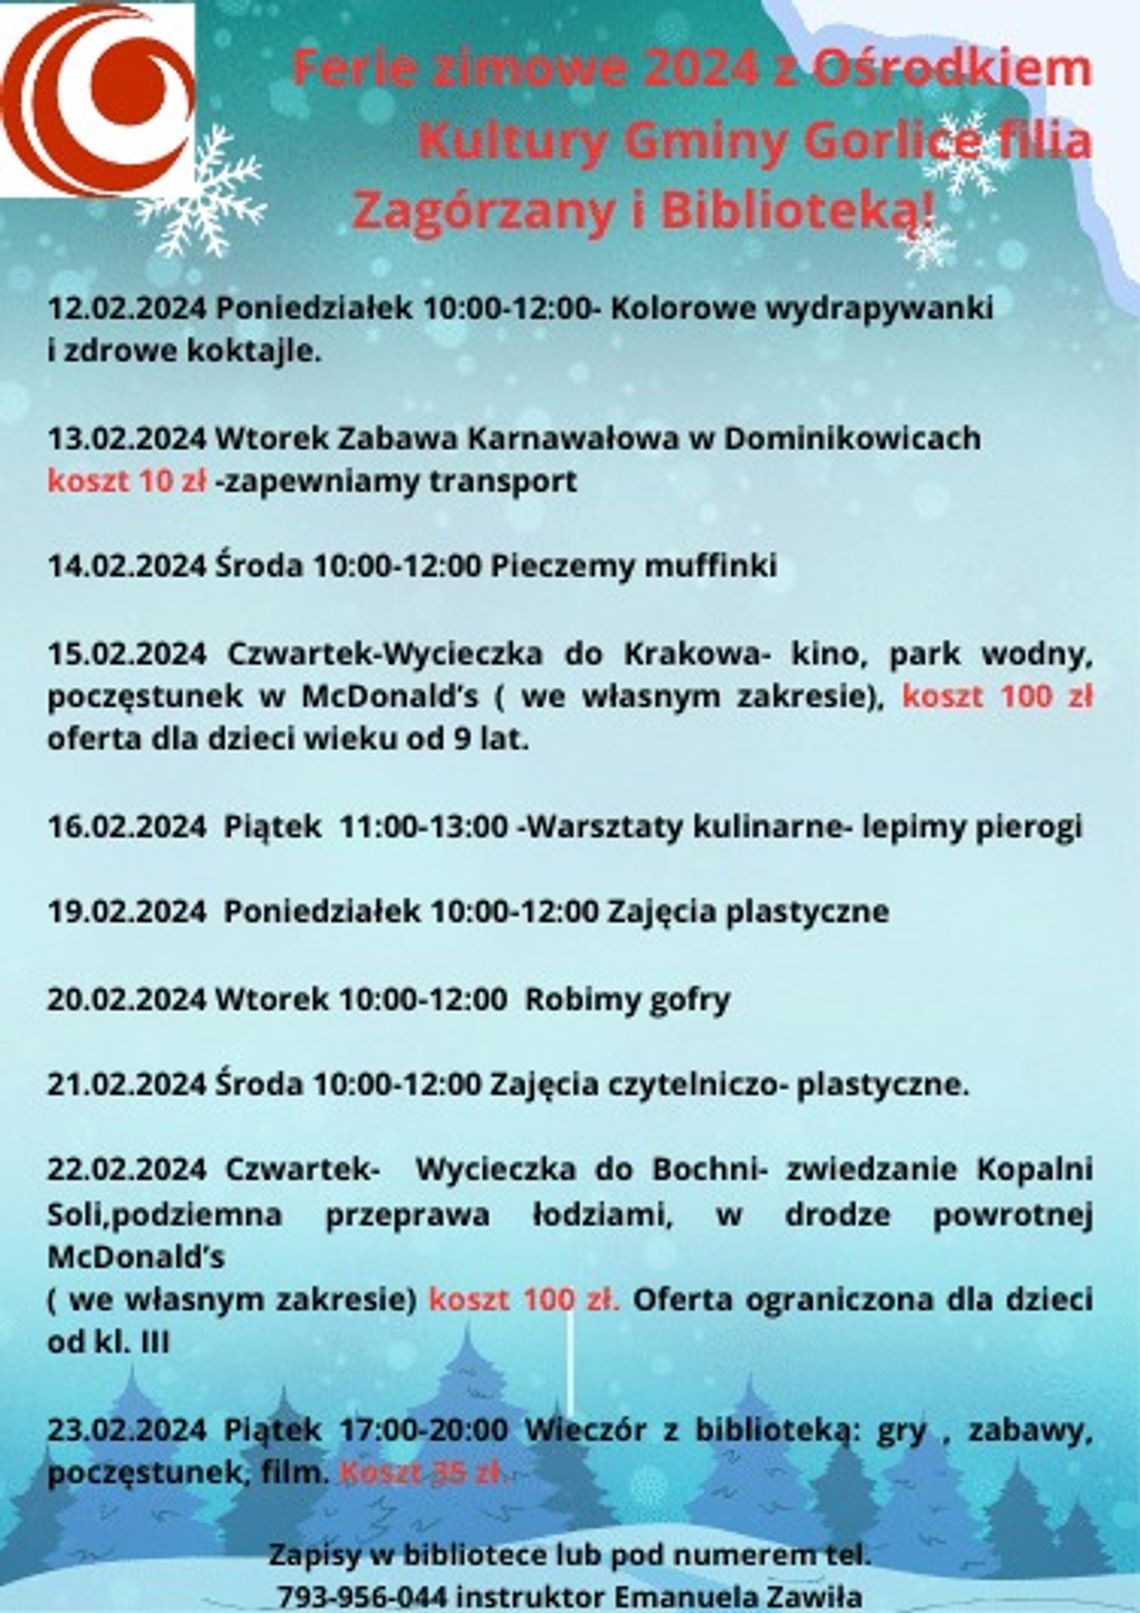 Ferie zimowe 2024 z OKGG filia Zagórzany i Biblioteką | halogorlice.info